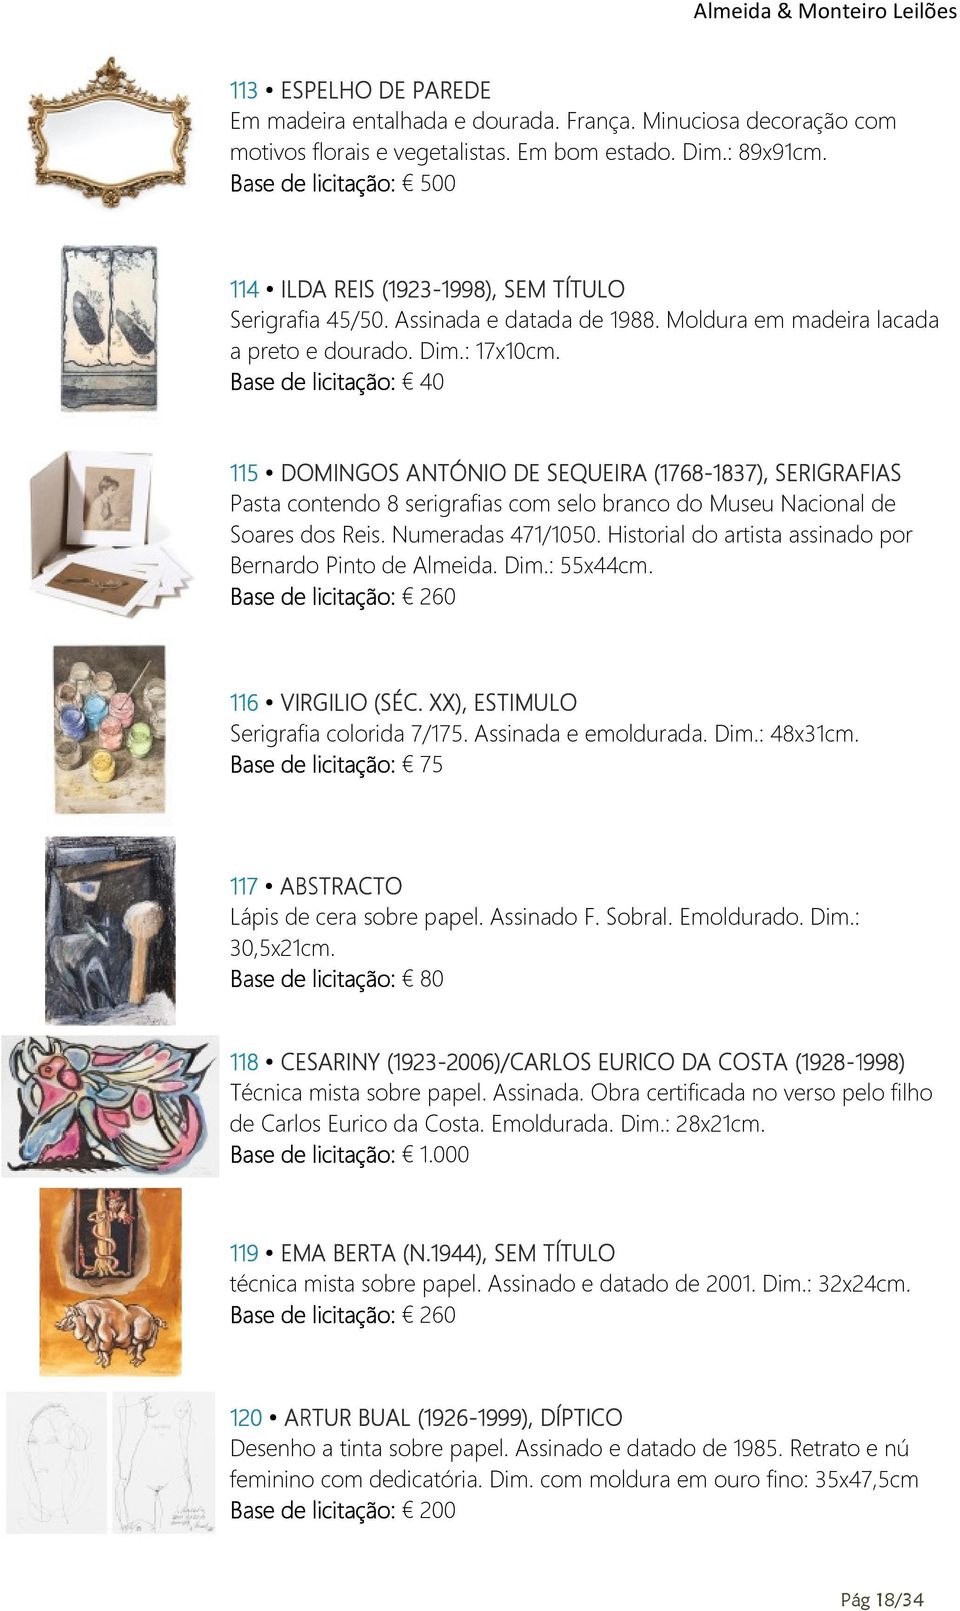 Base de licitação: 40 115 DOMINGOS ANTÓNIO DE SEQUEIRA (1768-1837), 1837), SERIGRAFIAS Pasta contendo 8 serigrafias com selo branco do Museu Nacional de Soares dos Reis. Numeradas 471/1050.